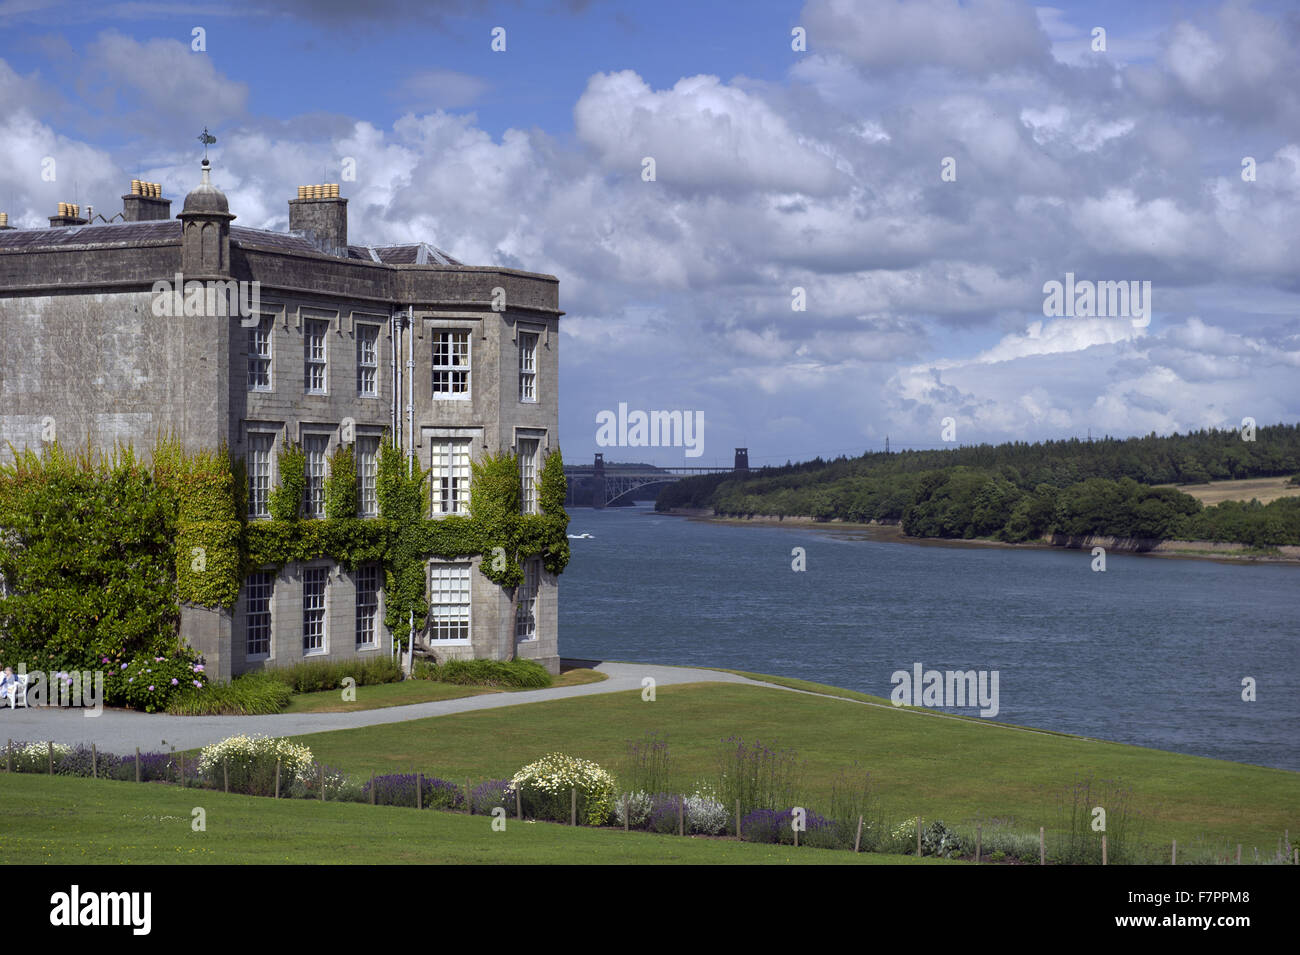 Blick auf das äußere des Hauses Plas Newydd Country House and Gardens, Anglesey, Wales. Dieses feine 18. Jahrhundert Herrenhaus liegt an den Ufern der Menai Strait, mit atemberaubender Aussicht von Snowdonia. Stockfoto